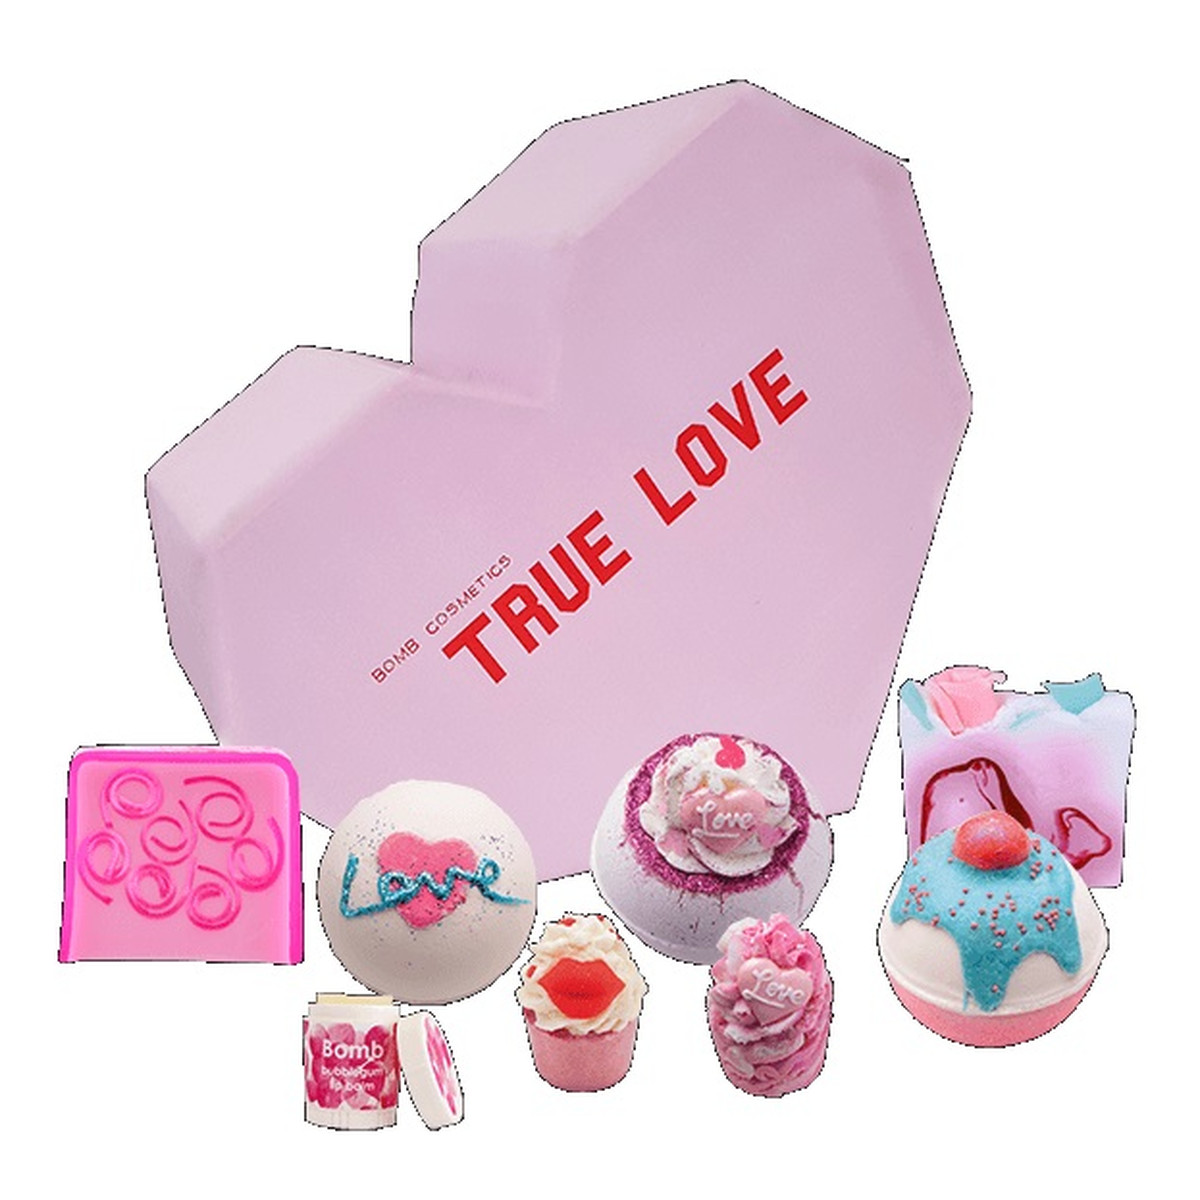 Bomb Cosmetics True Love Gift Box Zestaw kosmetyków kula musująca 3szt + mydełko glicerynowe 2szt + maślana babeczka 2szt + balsam do ust 1szt